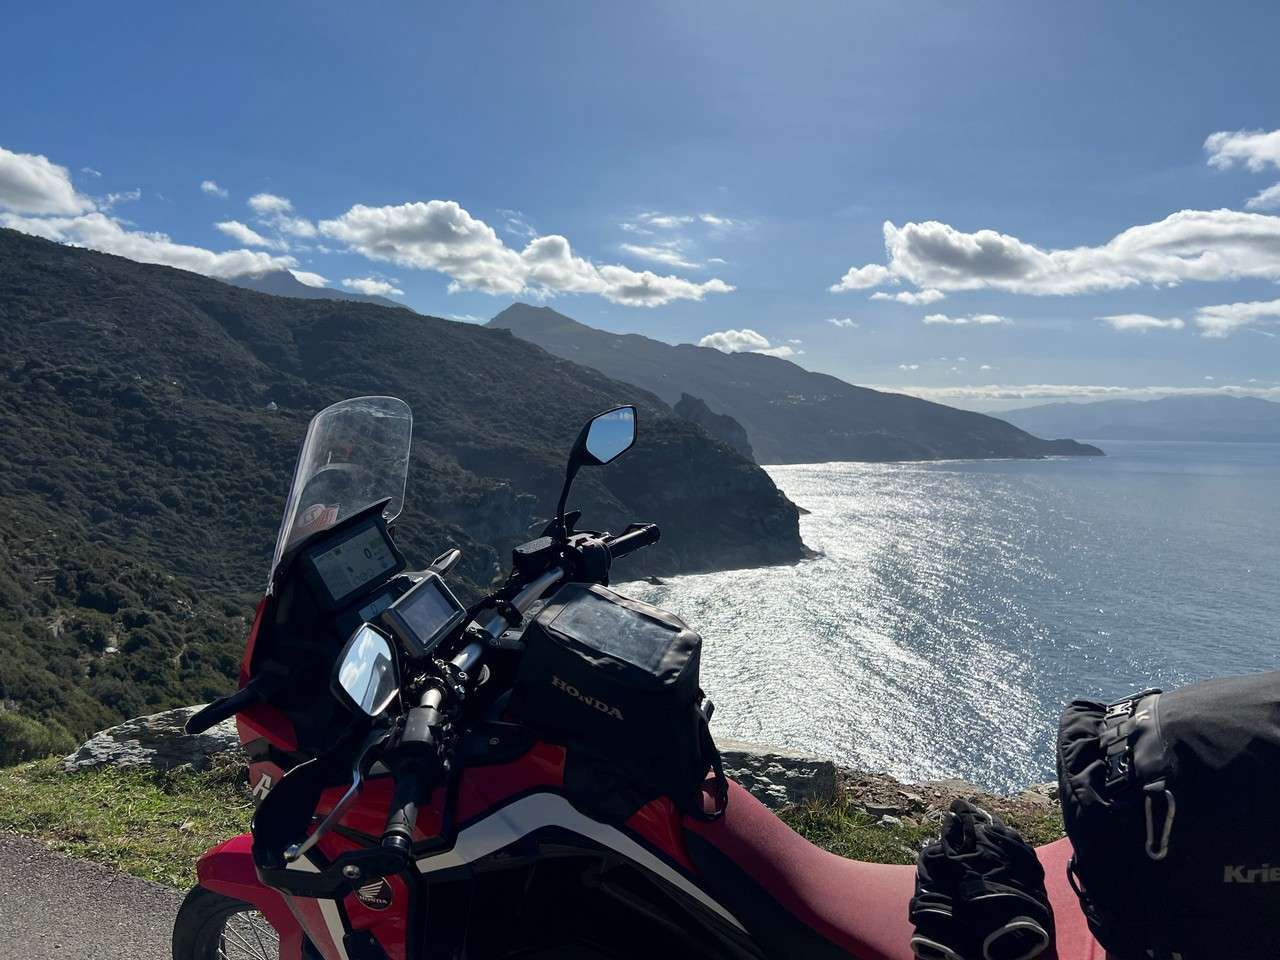 Corsica settentrionale in moto